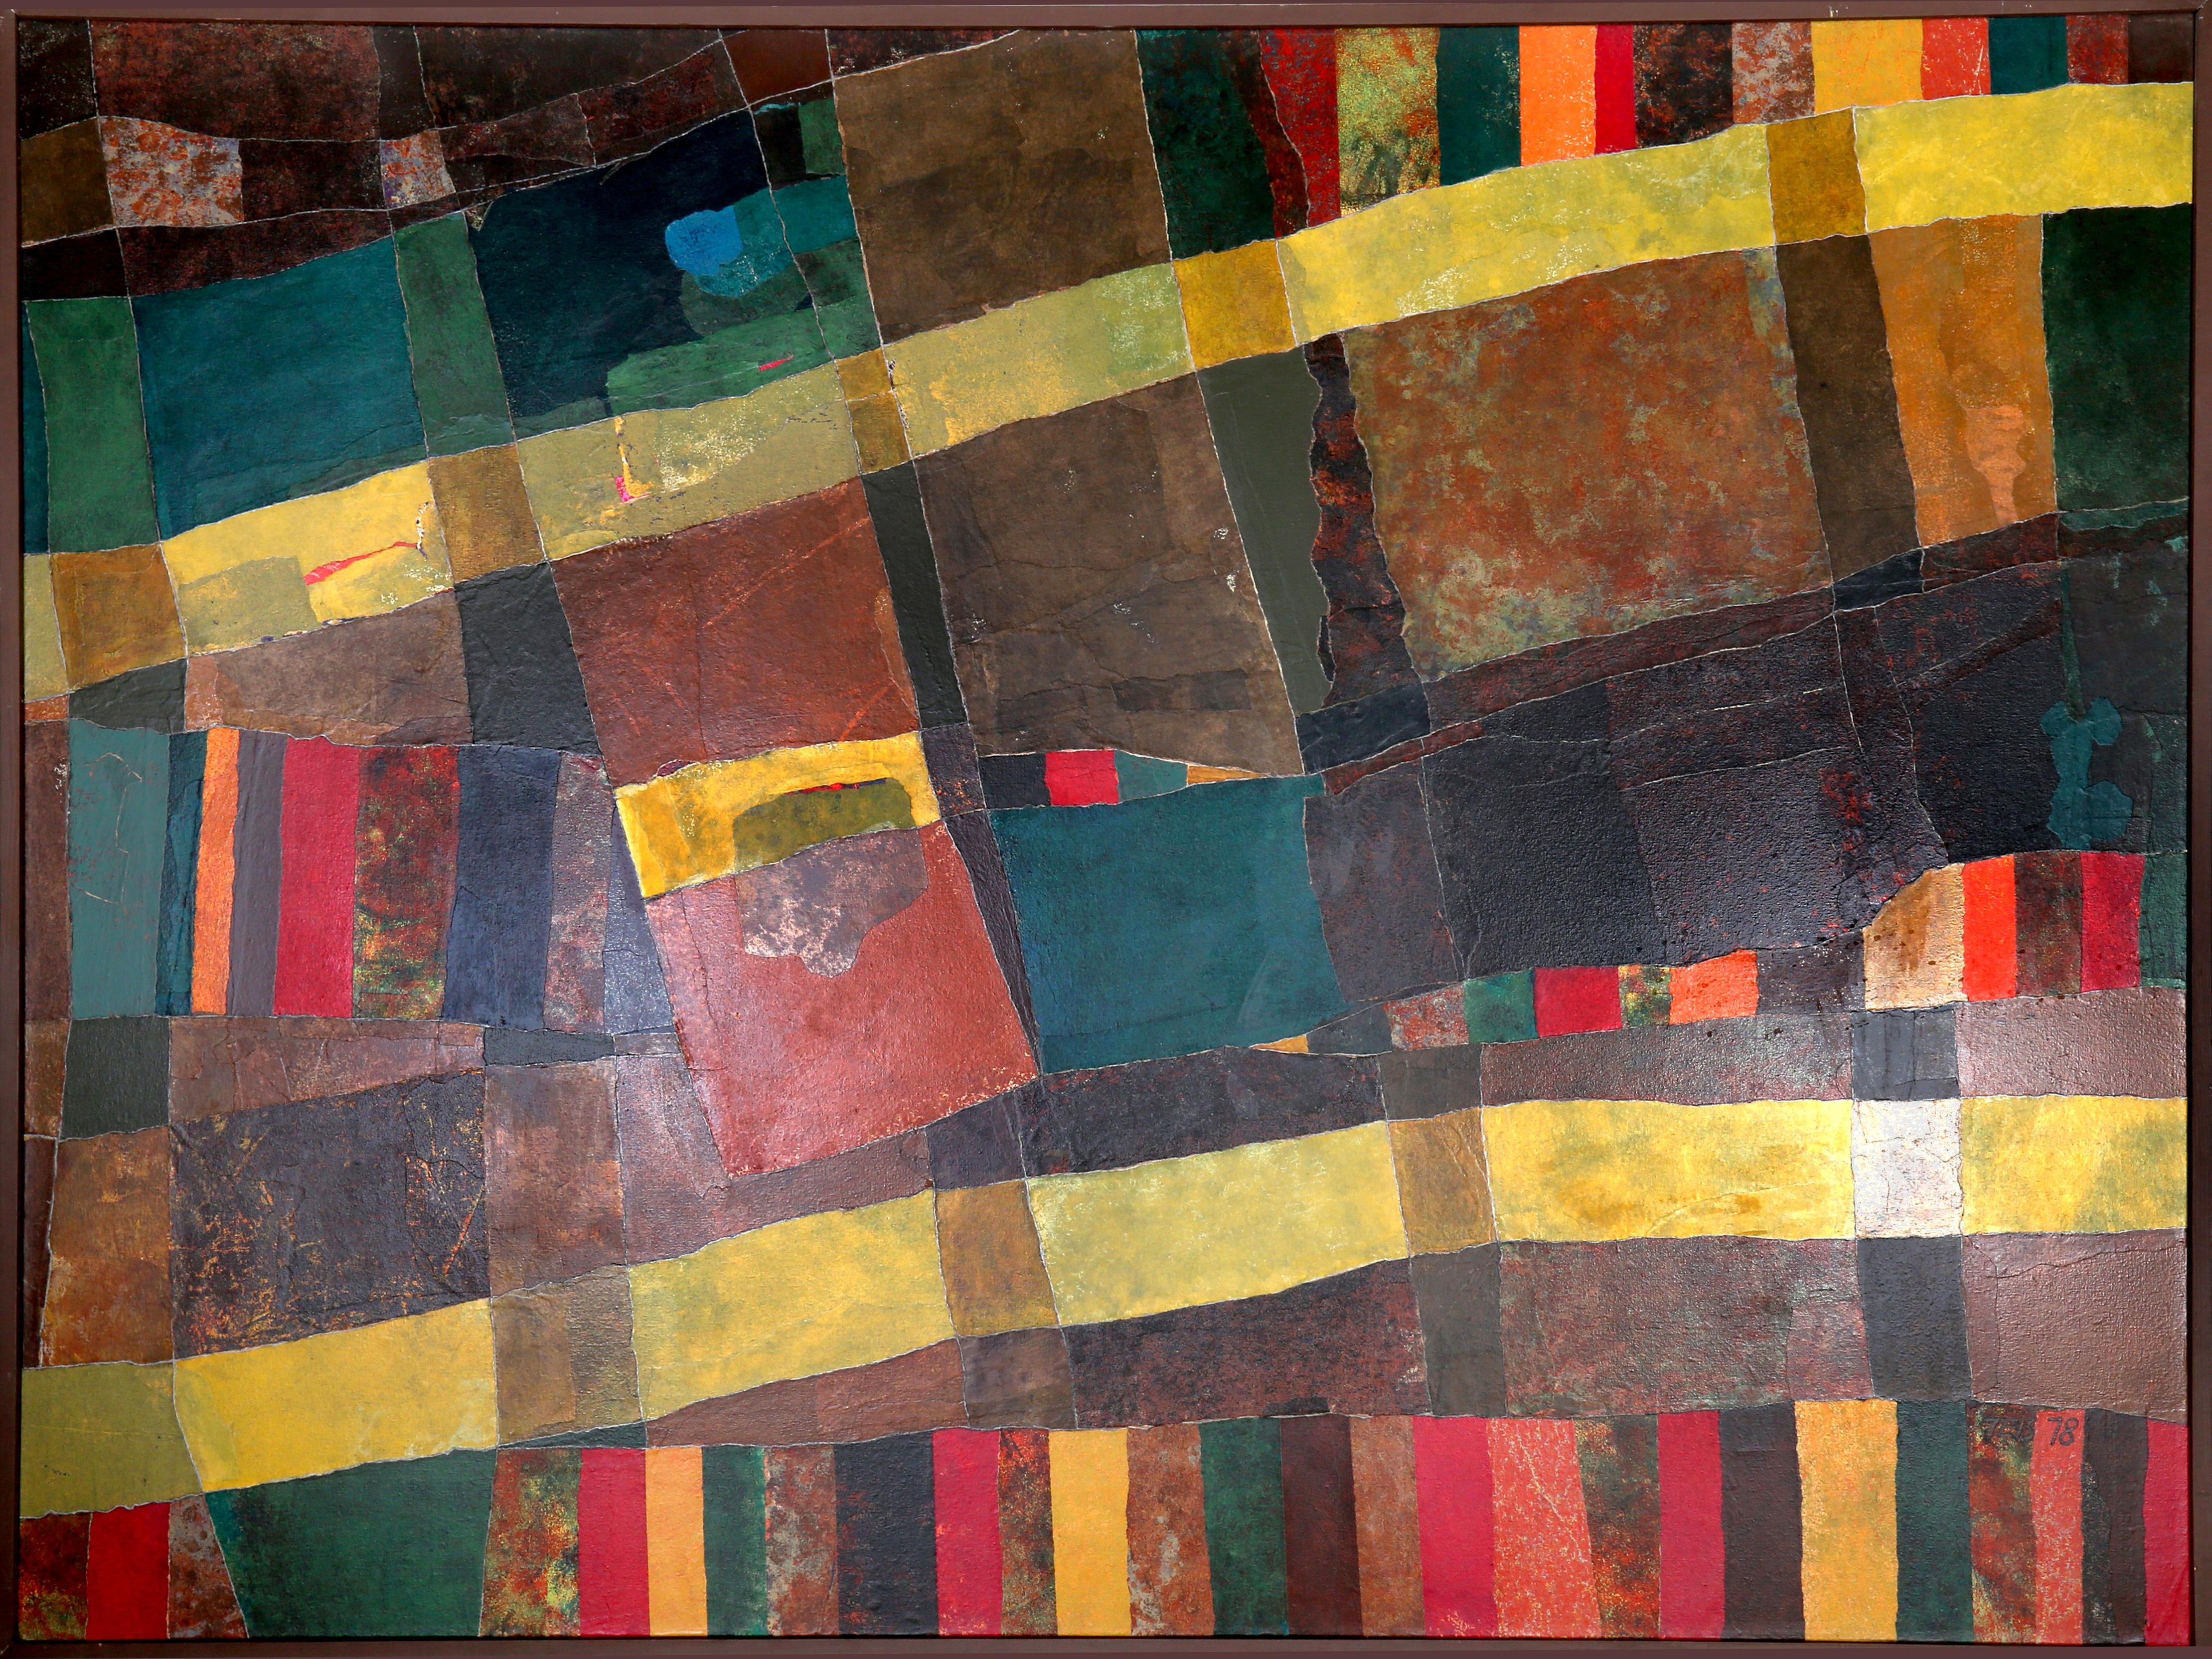 Artiste : Dan Teis, américain (1925 - 2002)
Titre : Abstrait avec des rayures jaunes
Année : 1978
Moyen : Huile sur toile, signé à droite.
Taille : 111,76 x 140,97 cm (44 x 55,5 in.) (111,76 x 140,97 cm)
Taille du cadre : 45.25 x 57.25 pouces